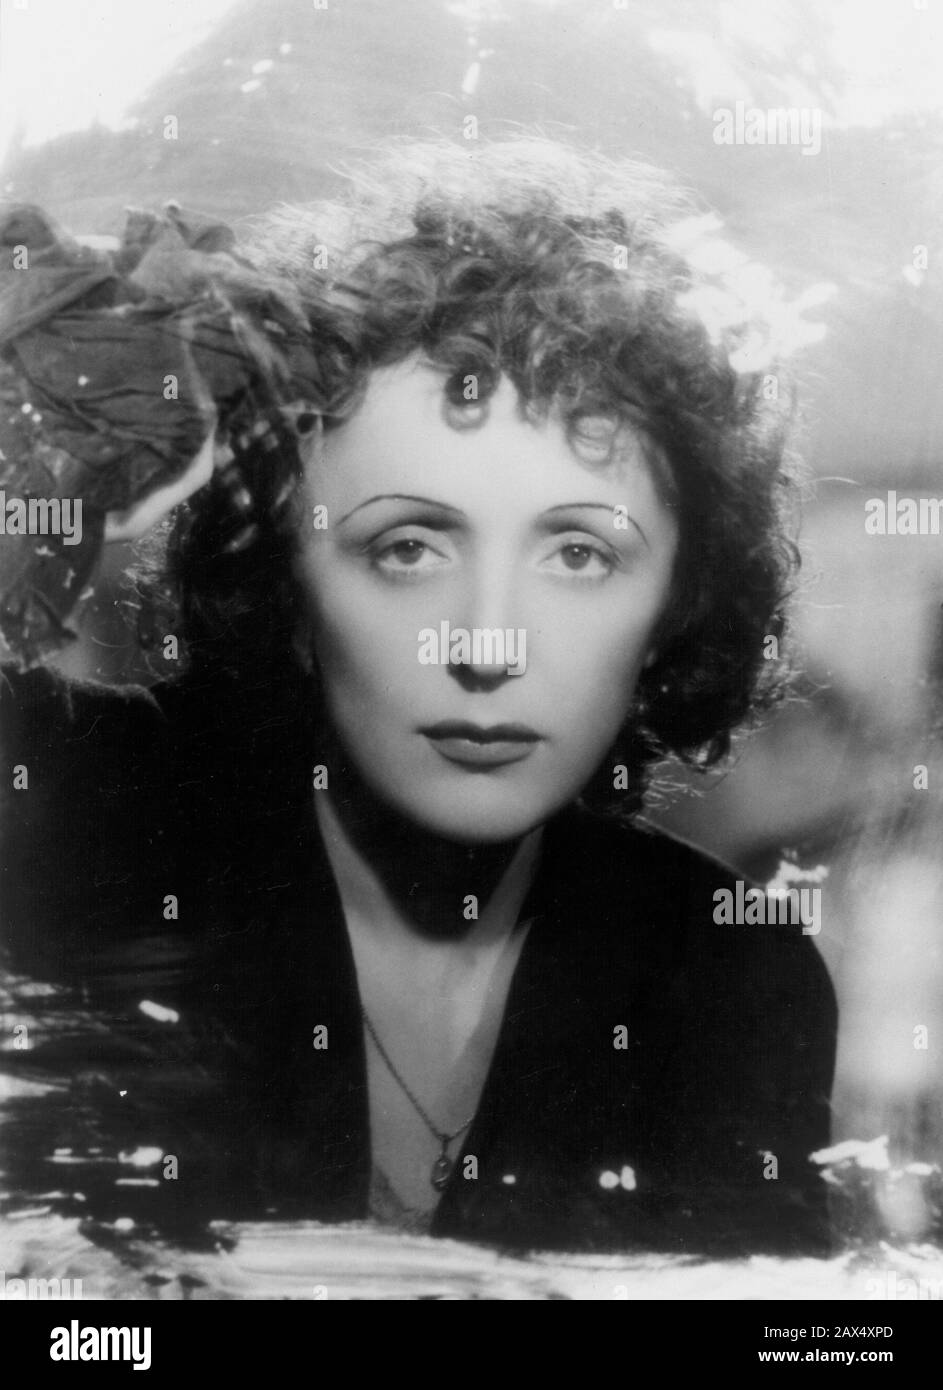 1941 , ITALIA : la célebre cantante francesa EDITH PIAF ( nacida Giovanna Gassion , 1915 - 1963 ) En la película MONTMARTRE-sur-SEINE por Georges Lacombe - cantante - actriz - atrice - CINE - CINE - CINE - FINESTRA - ventana - esistenzialismo - esistenzialista - existencialista - existencialismo - riccioli - rizos ----- Archivio GBB Foto de stock